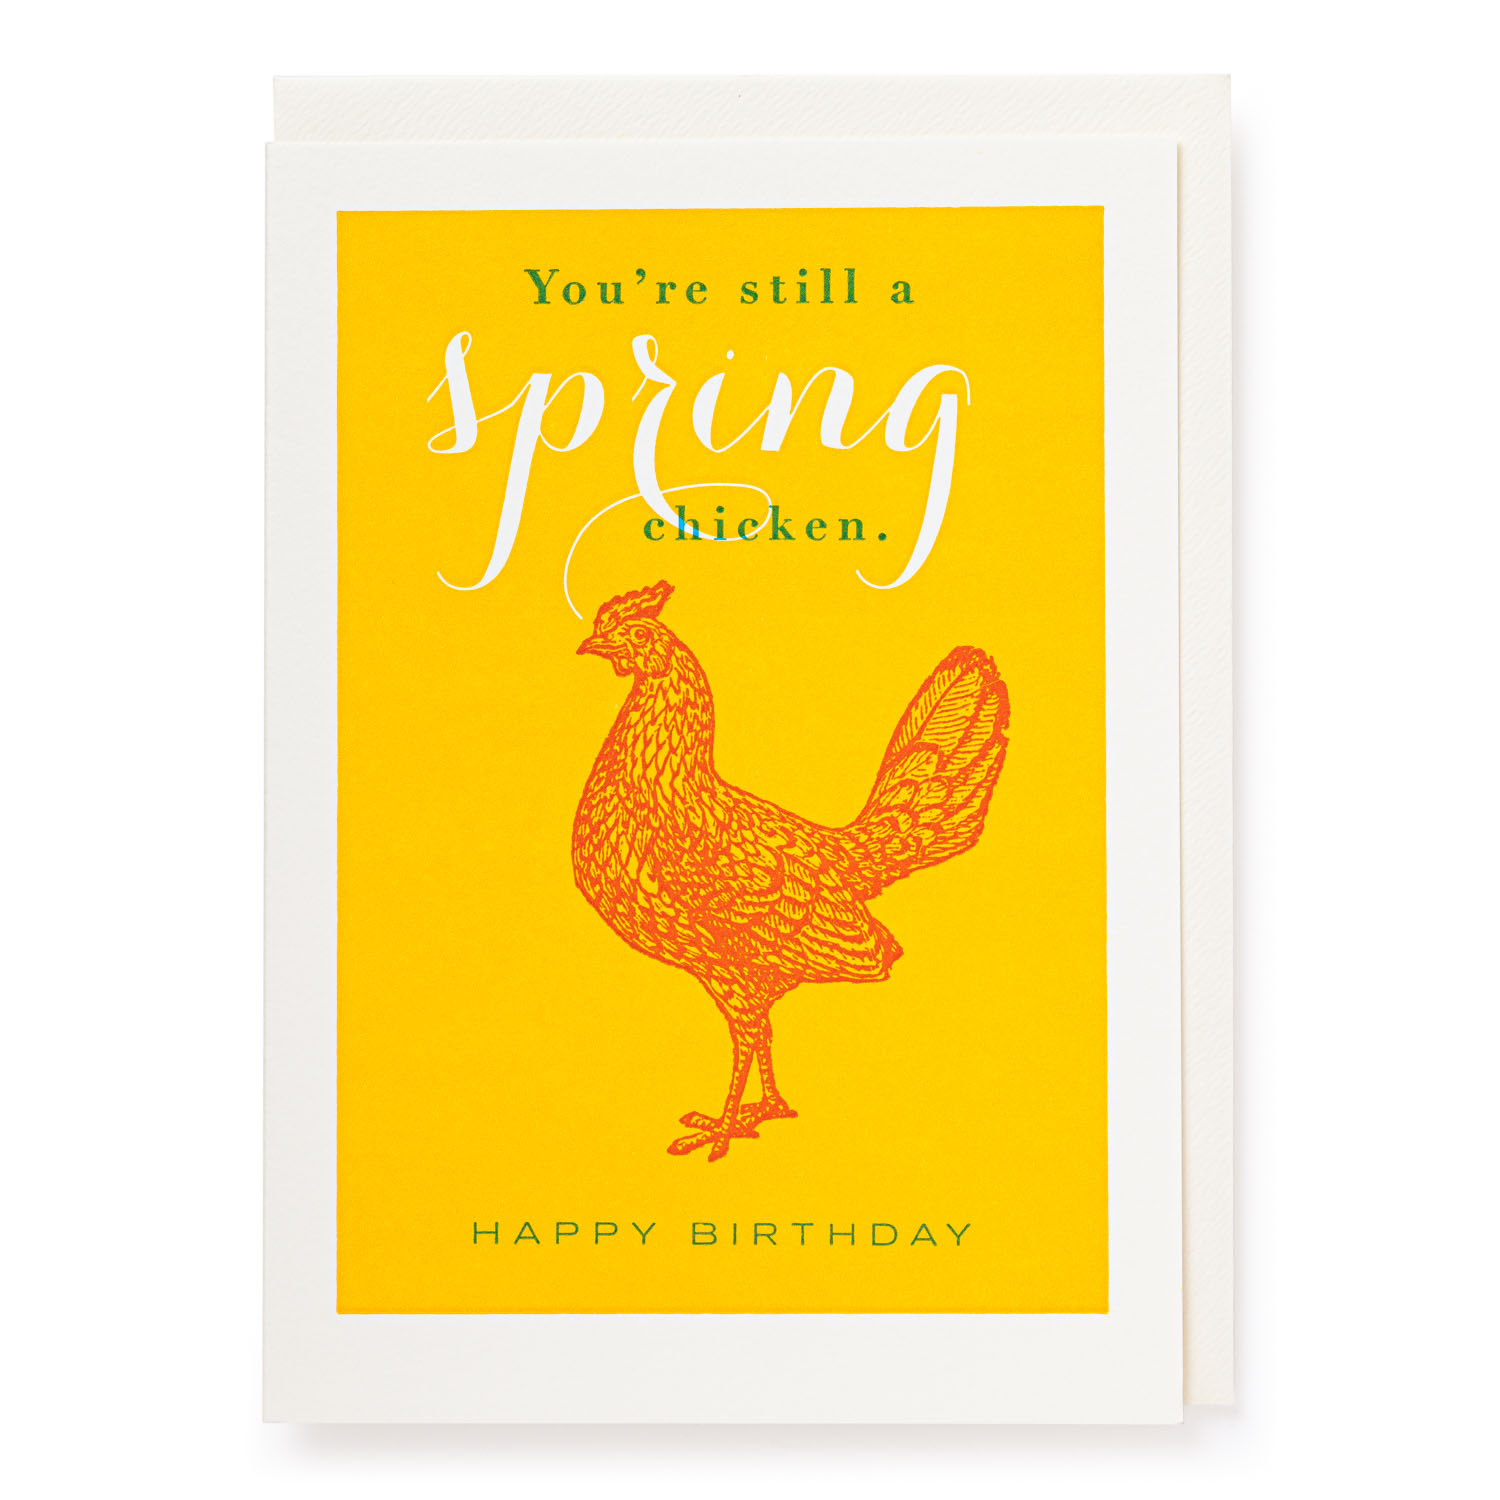 Spring Chicken - Letterpress Cards - J.Falkner - from Archivist Gallery 